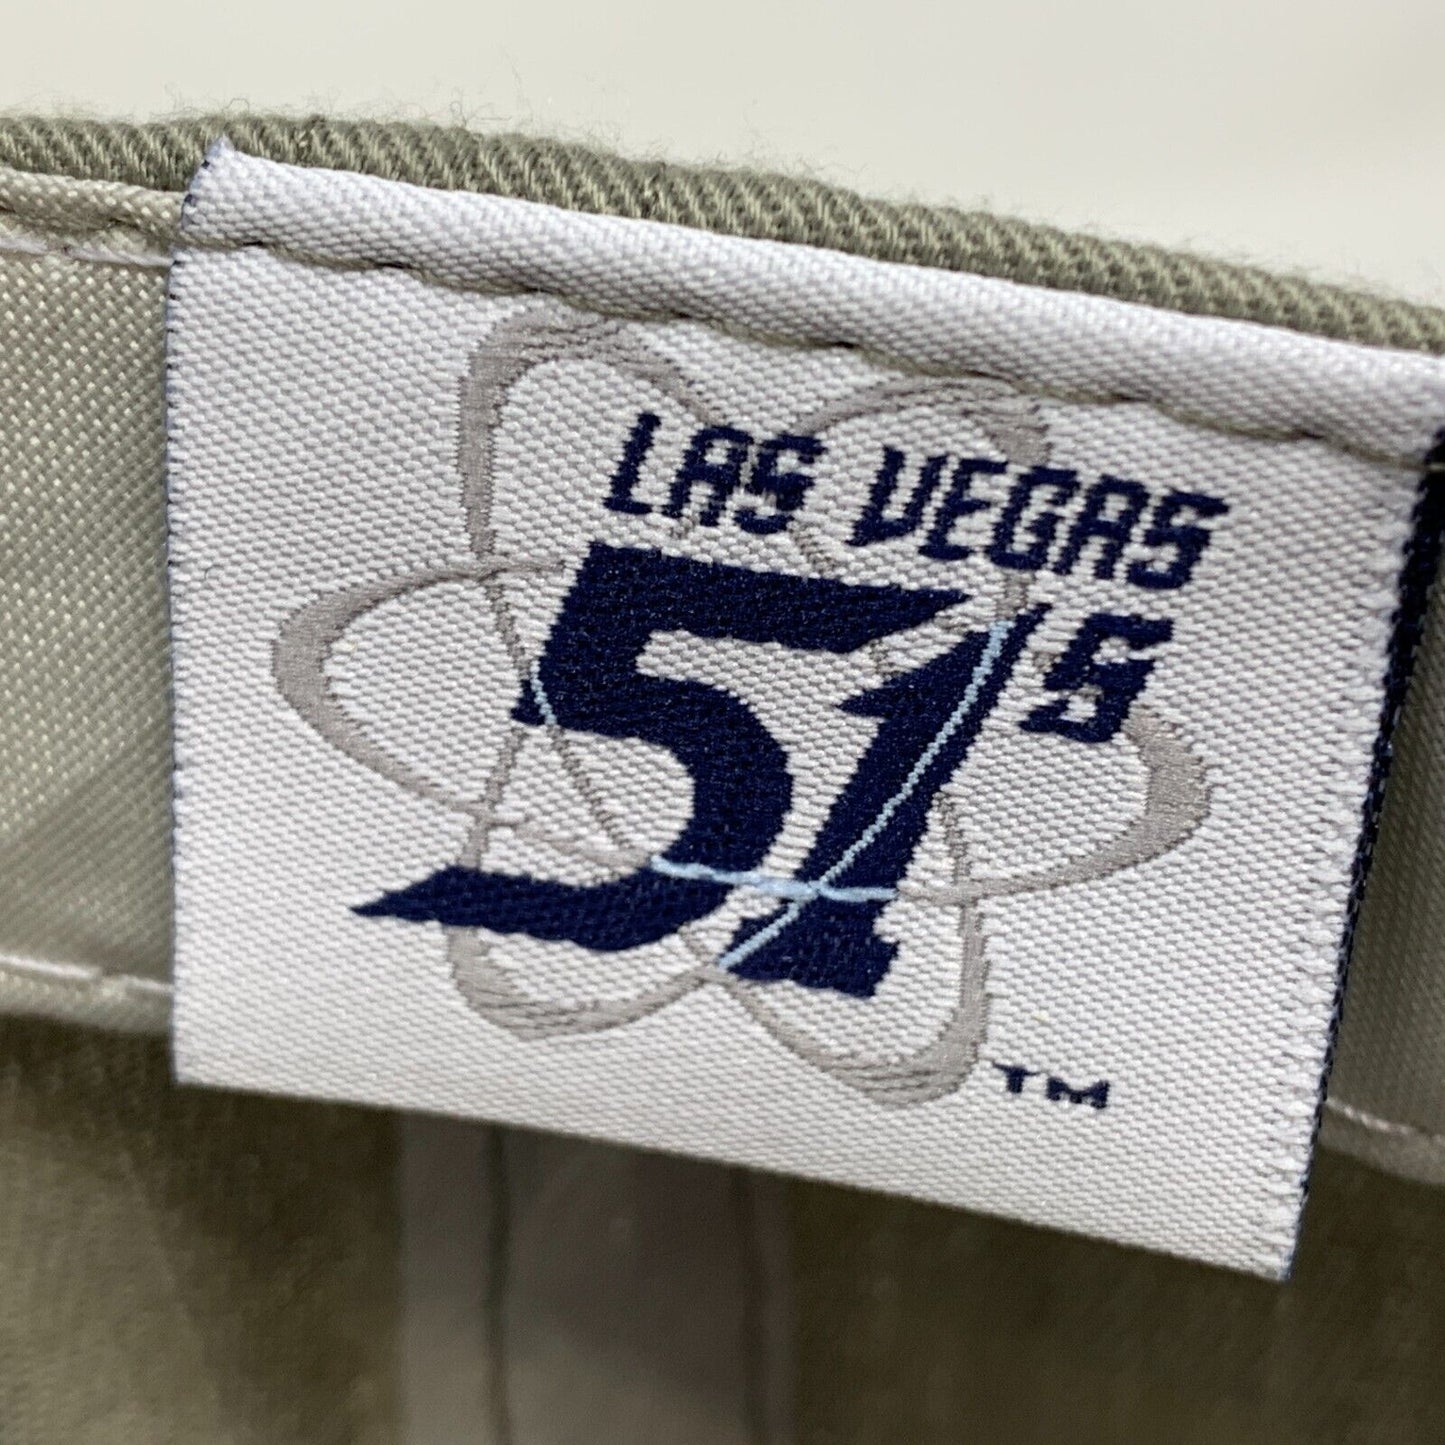 Las Vegas 51s Strapback Baseball Cap AAA Minor League Aviators Dodgers Tan Hat